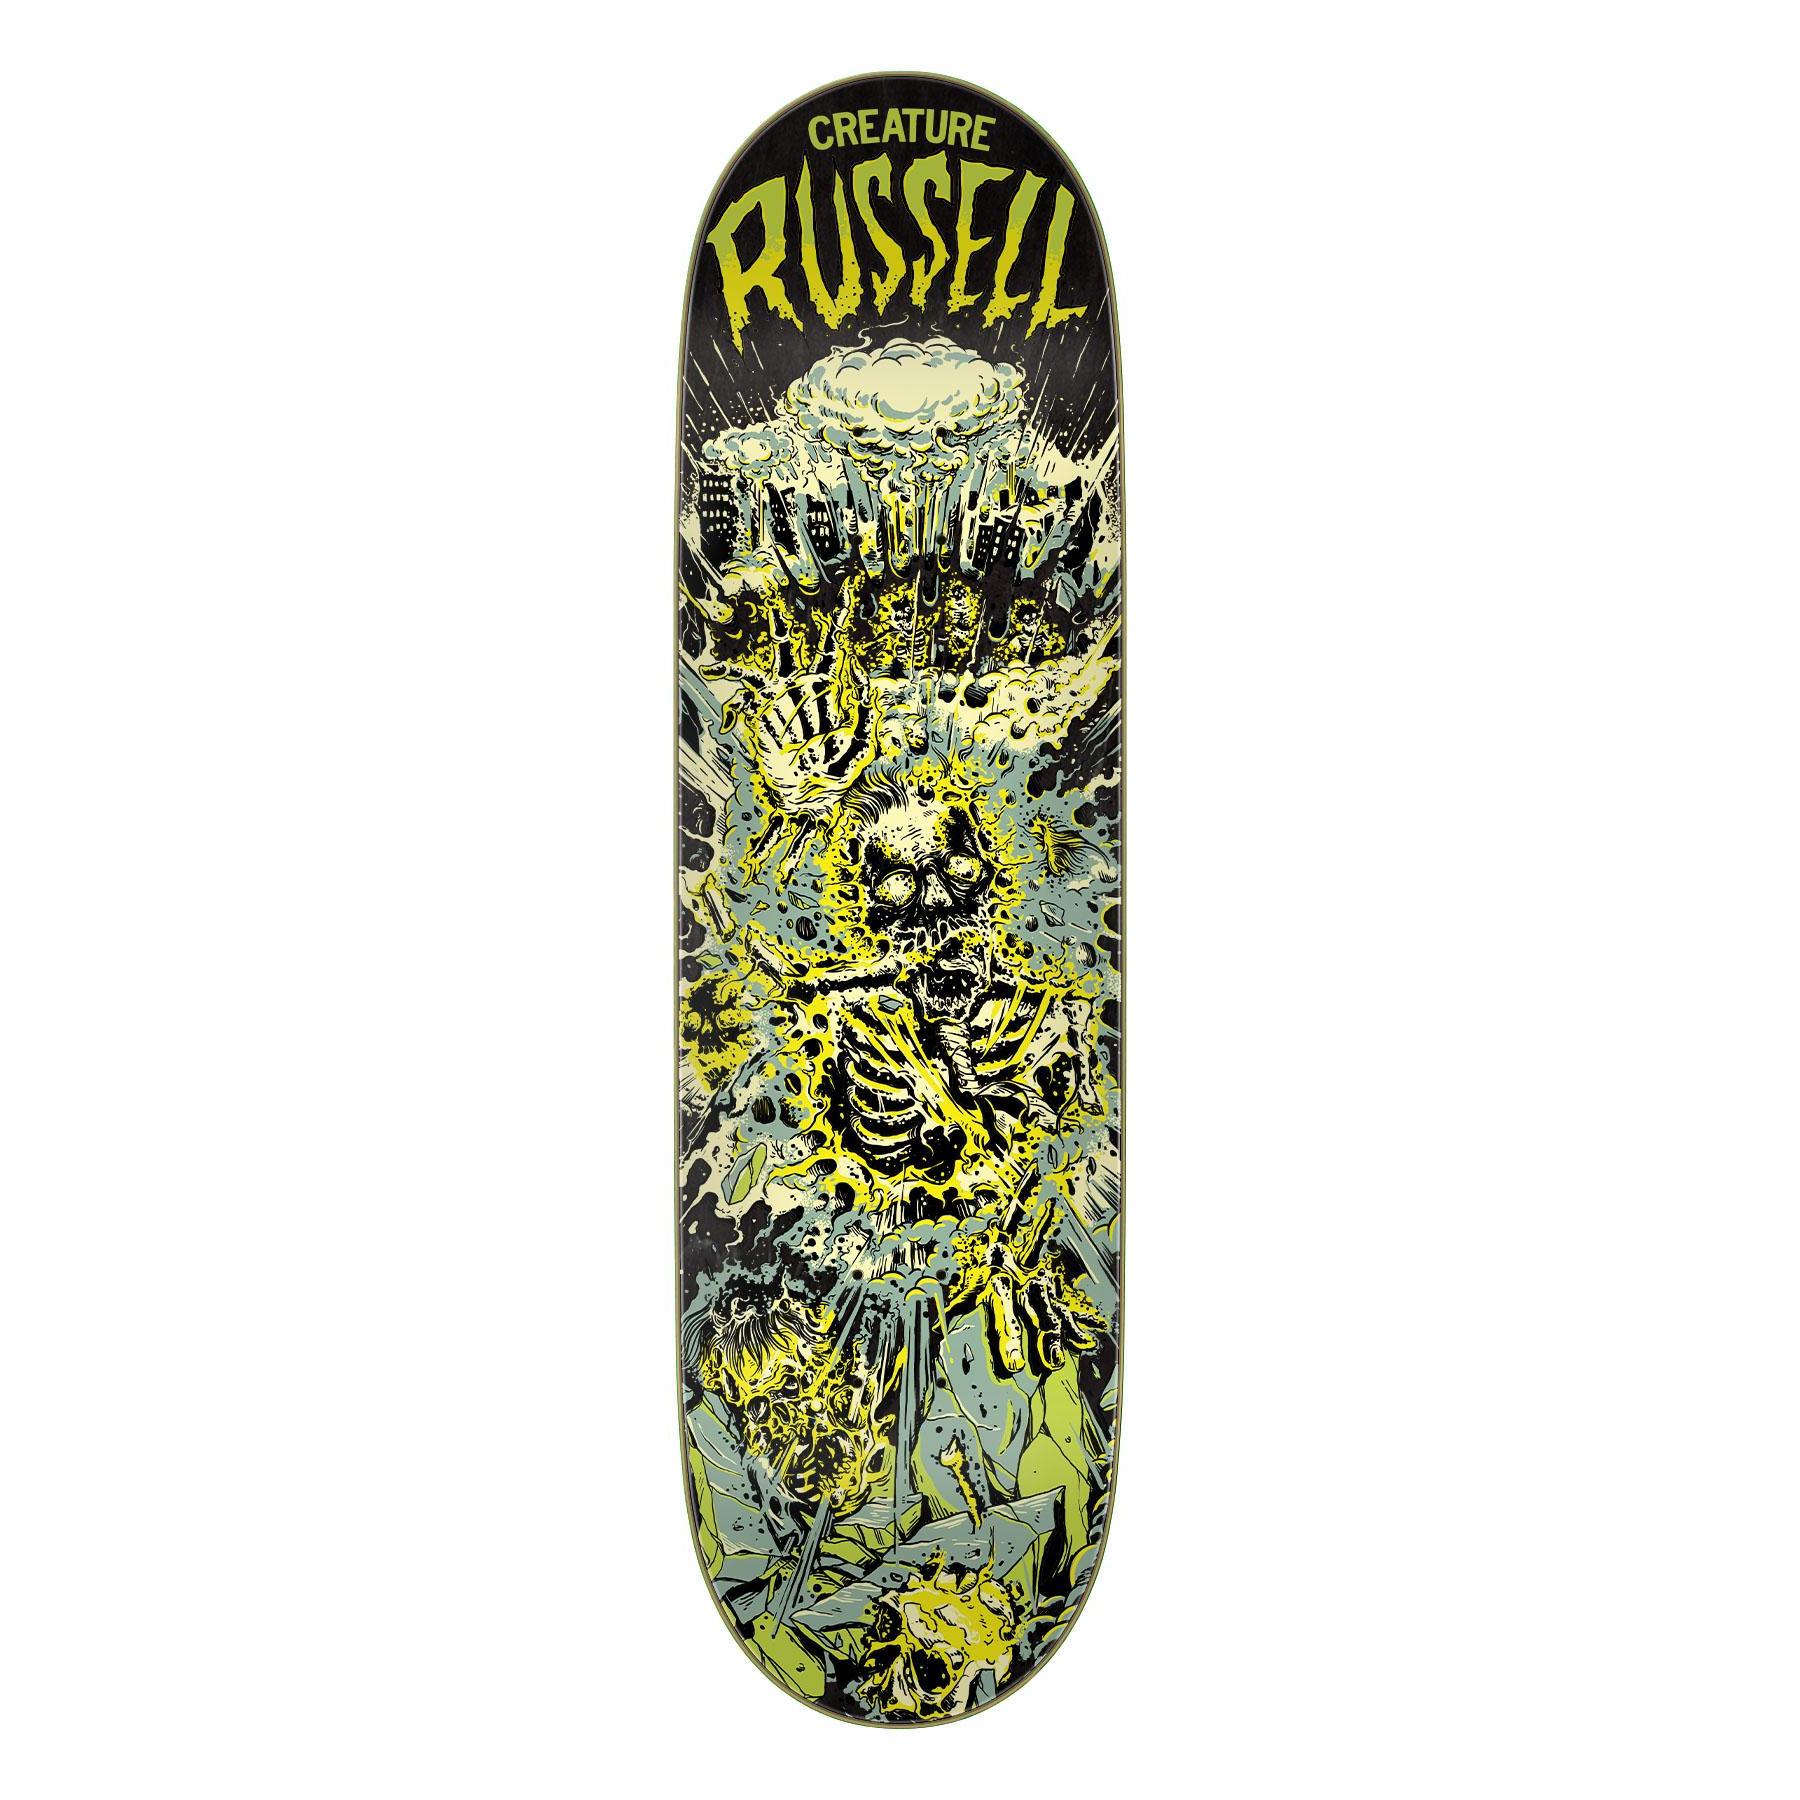 Creature Doomsday Russell Deck Planche de skateboard 8 6